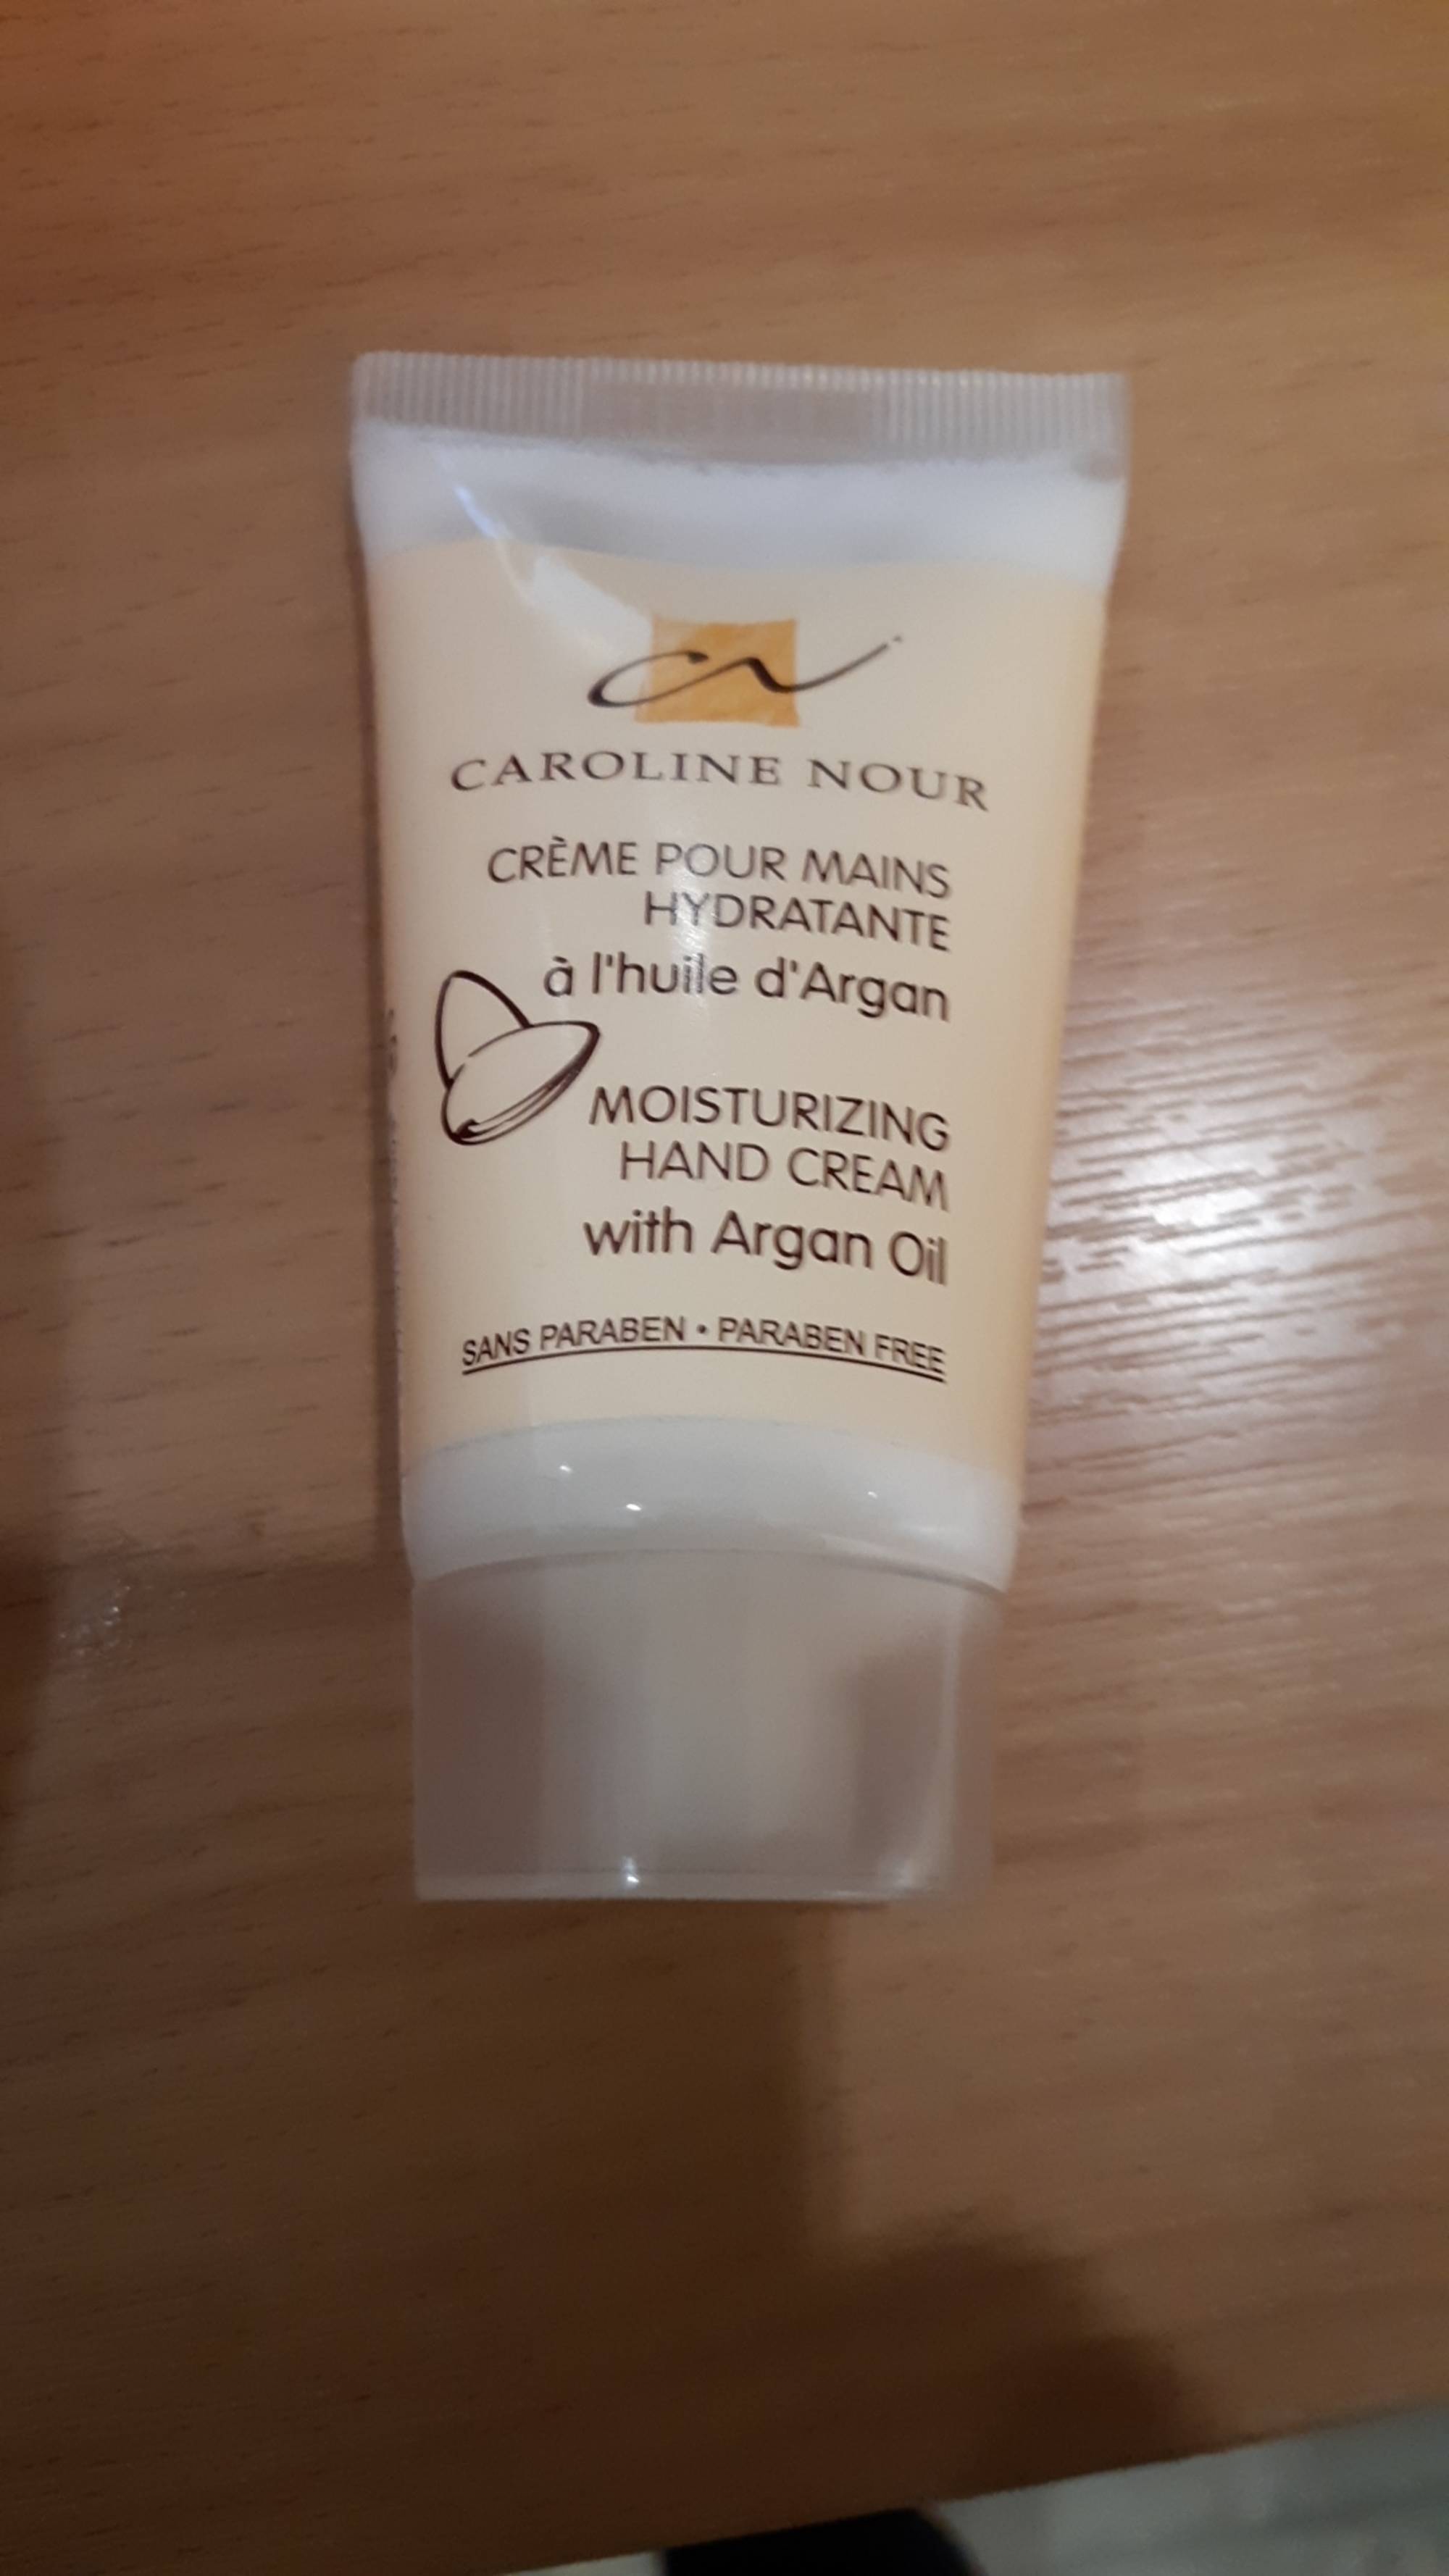 CAROLINE NOUR - Crème pour mains hydratante à l'huile d'argan